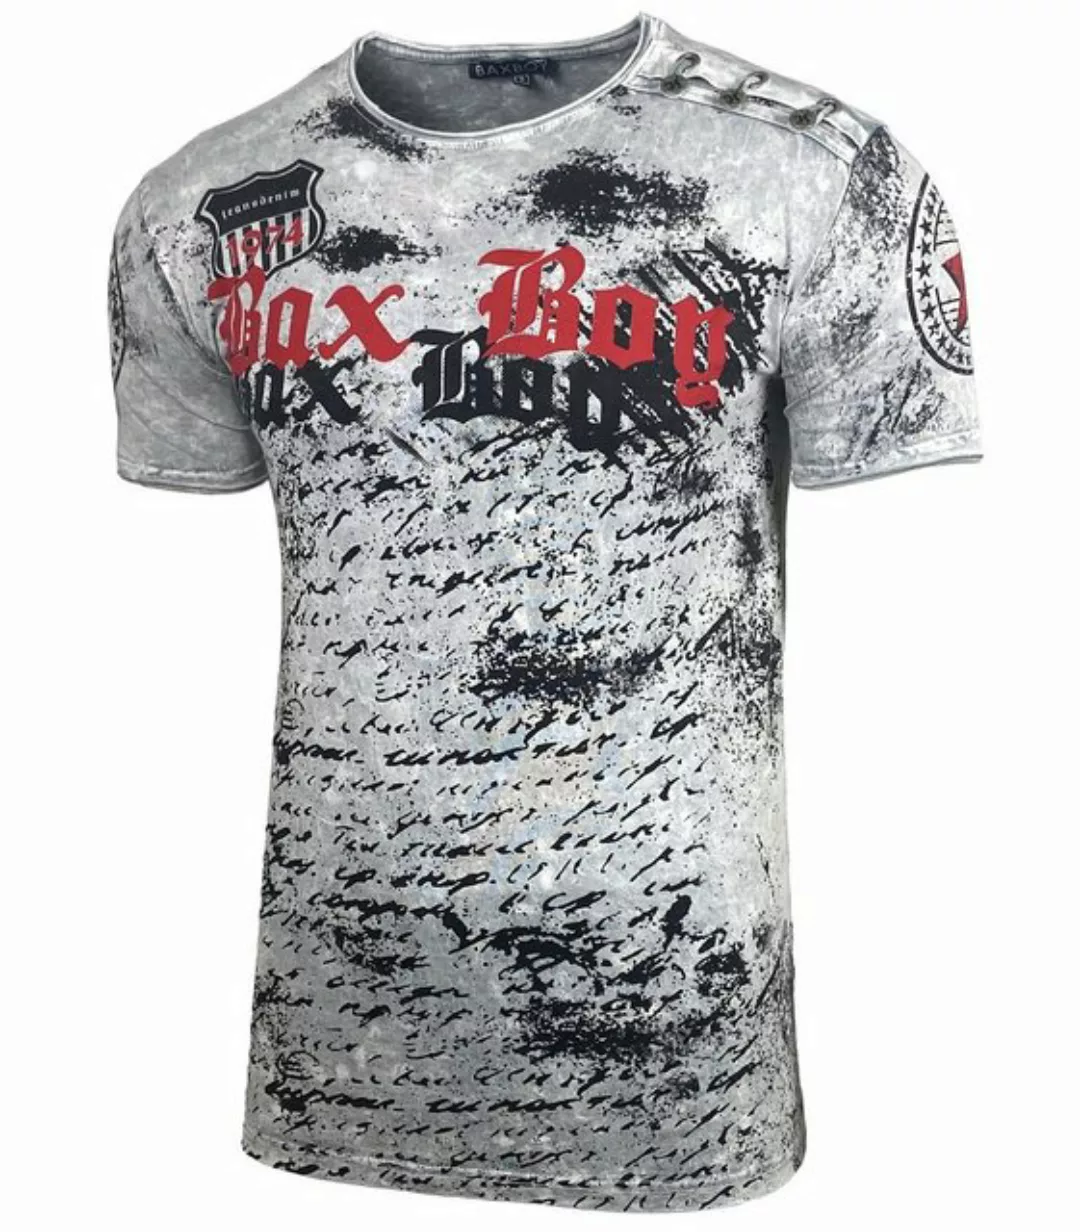 Baxboy T-Shirt Baxboy Batik style Herren T-Shirt mit Front Logo Print günstig online kaufen